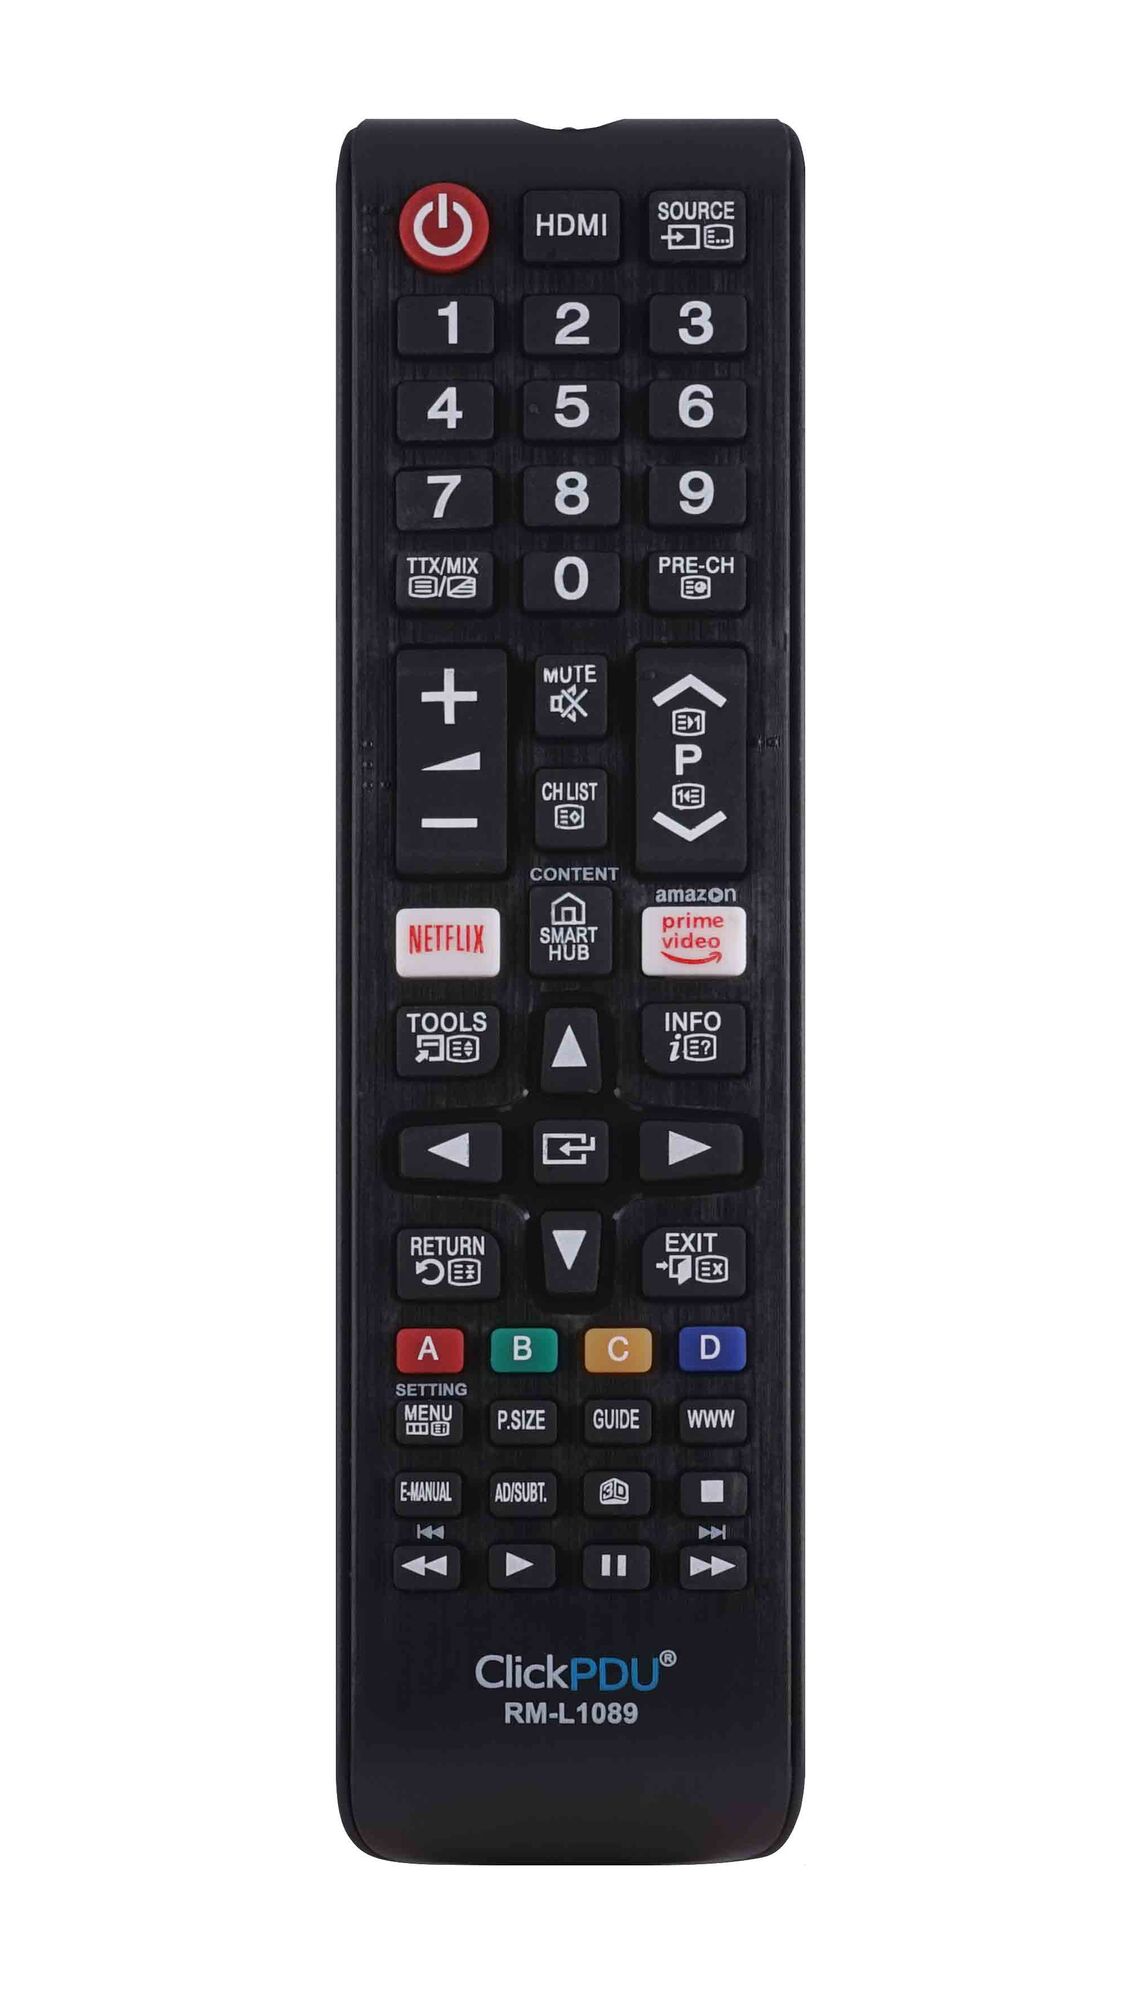 Пульт ДУ универсальный ClickPDU Samsung RM-L1089 Prime video, netflix, 3D, Smart Hub LED TV